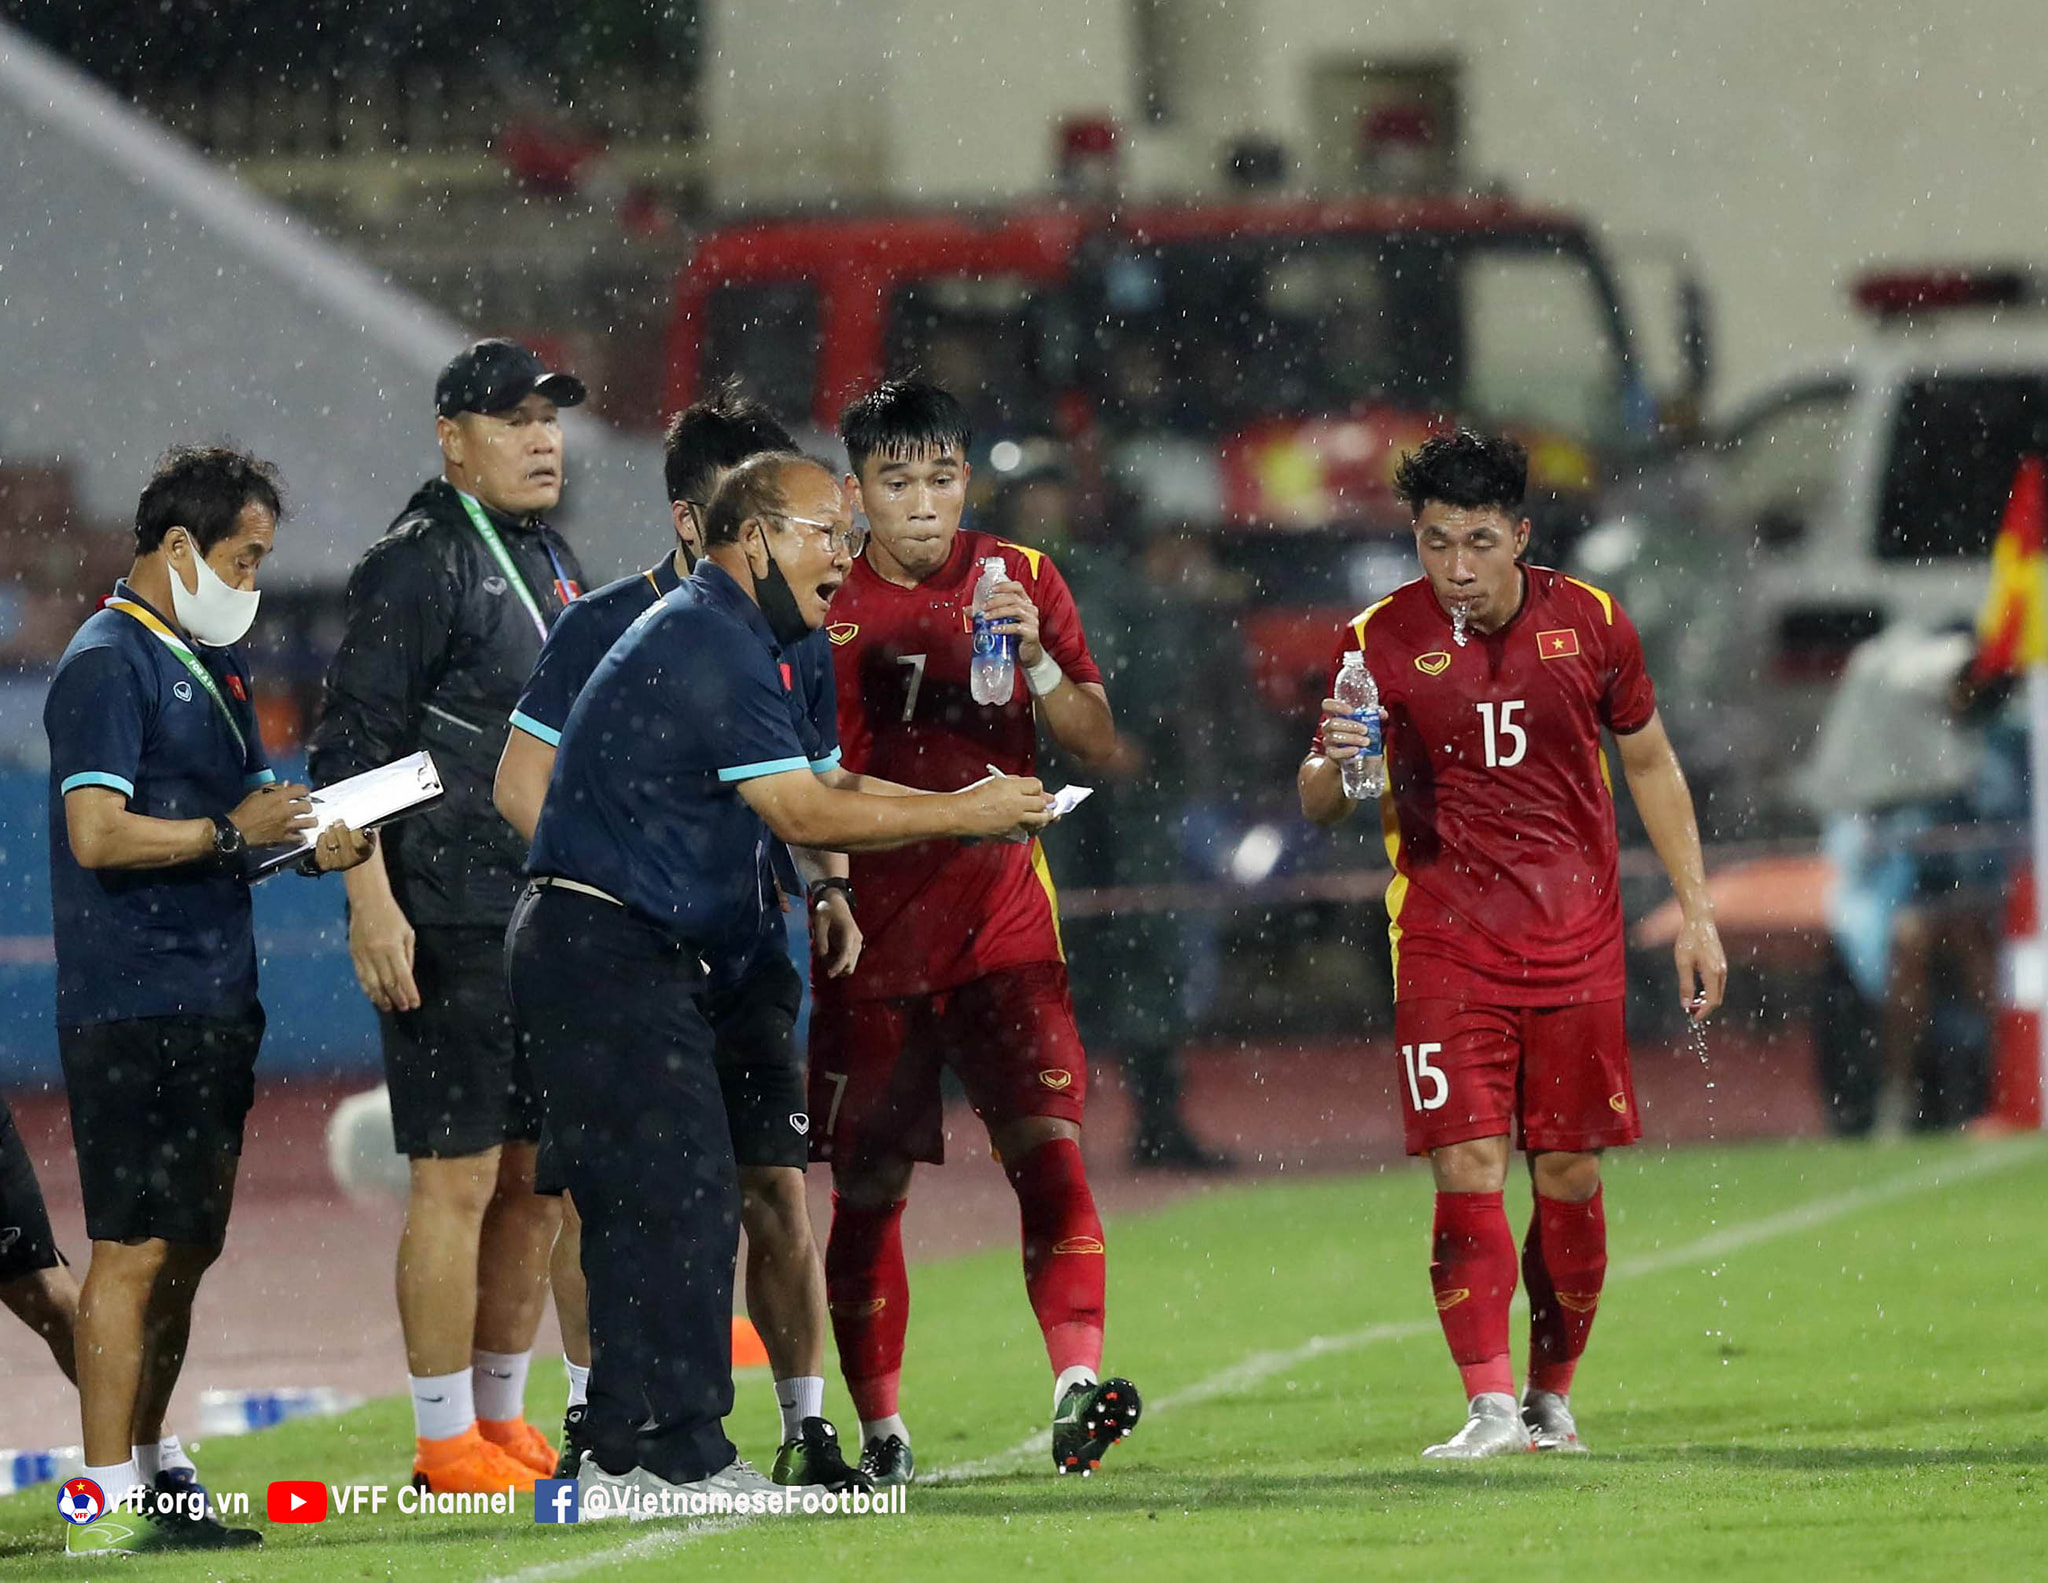 Lịch thi đấu bóng đá hôm nay 10/5: Bảng A - SEA Games 31 có biến, U23 Việt Nam mất suất vào Bán kết?